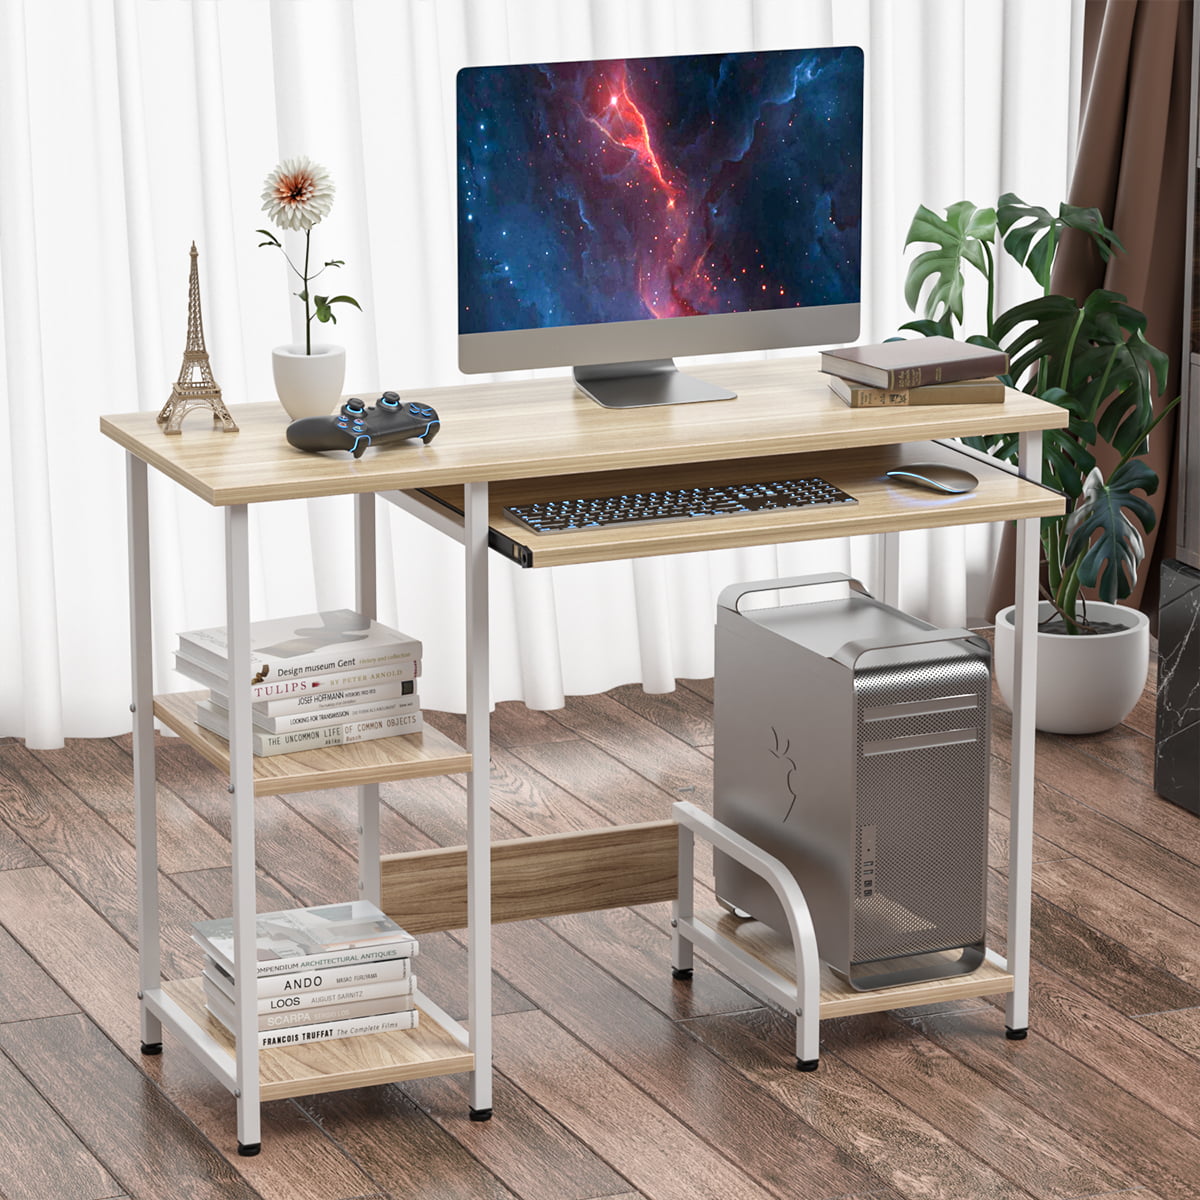 Details about   Modern Office Desk Computer Desk W/Sliding Keyboard Shelf Laptop Home Desk Table 